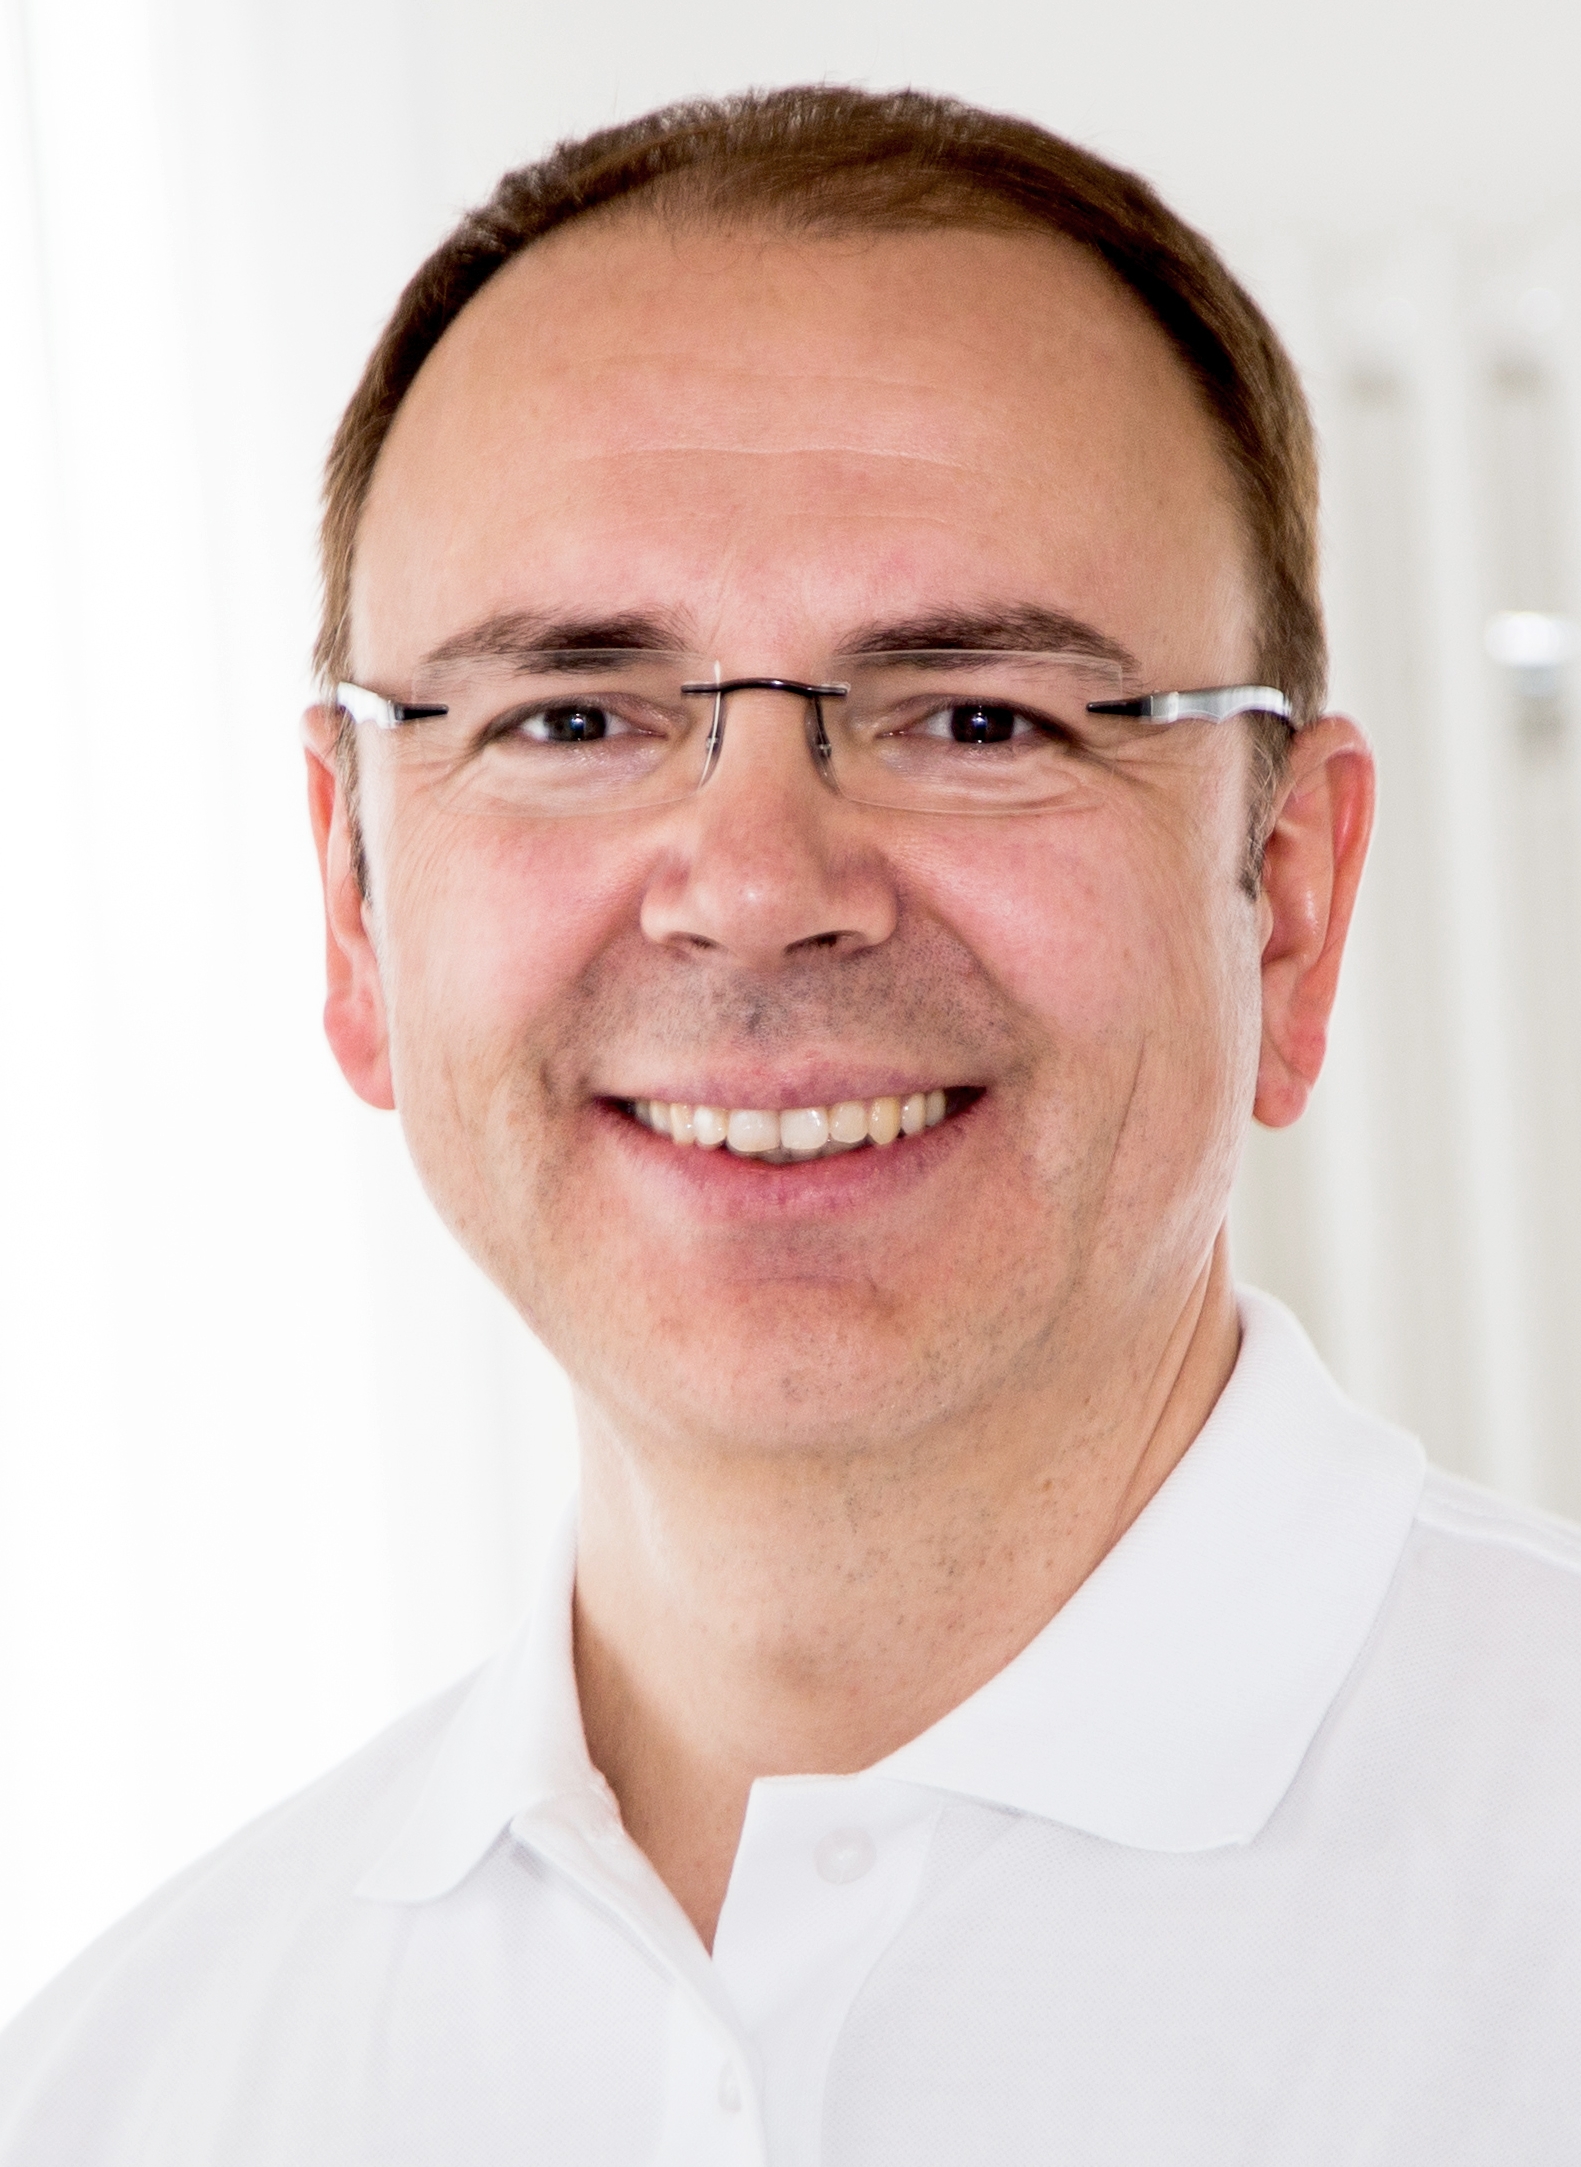 Dr. Martin Rinio, Facharzt für Orthopädie, Chirurgie und Unfallchirurgie in Gundelfingen bei Freiburg.